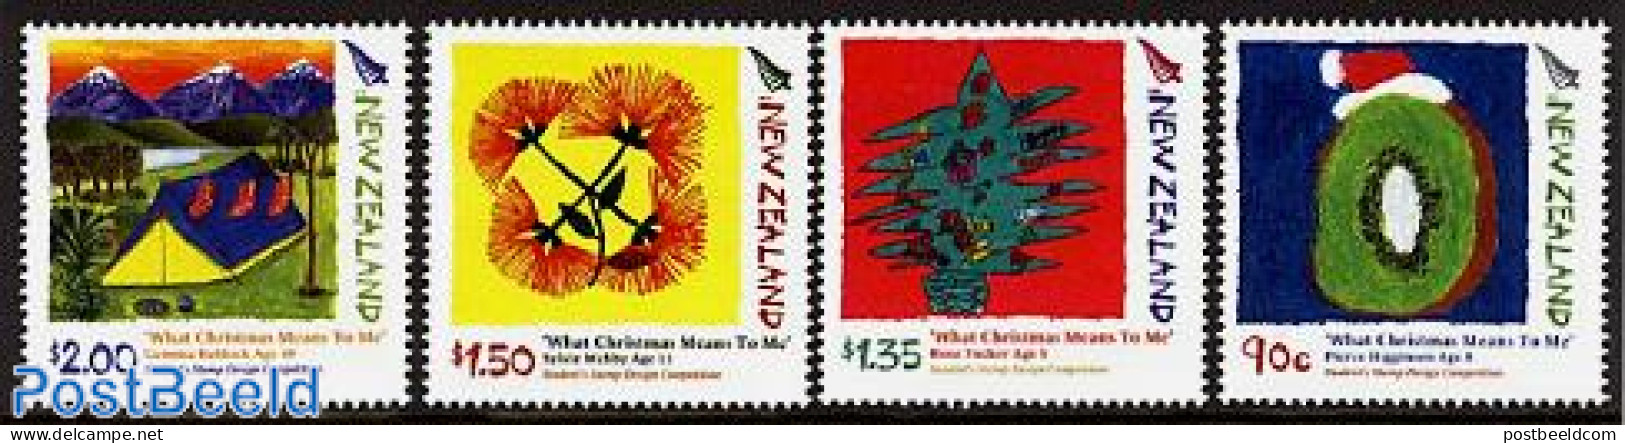 New Zealand 2006 Christmas, Children Stamp Design 4v, Mint NH, Religion - Christmas - Art - Children Drawings - Neufs